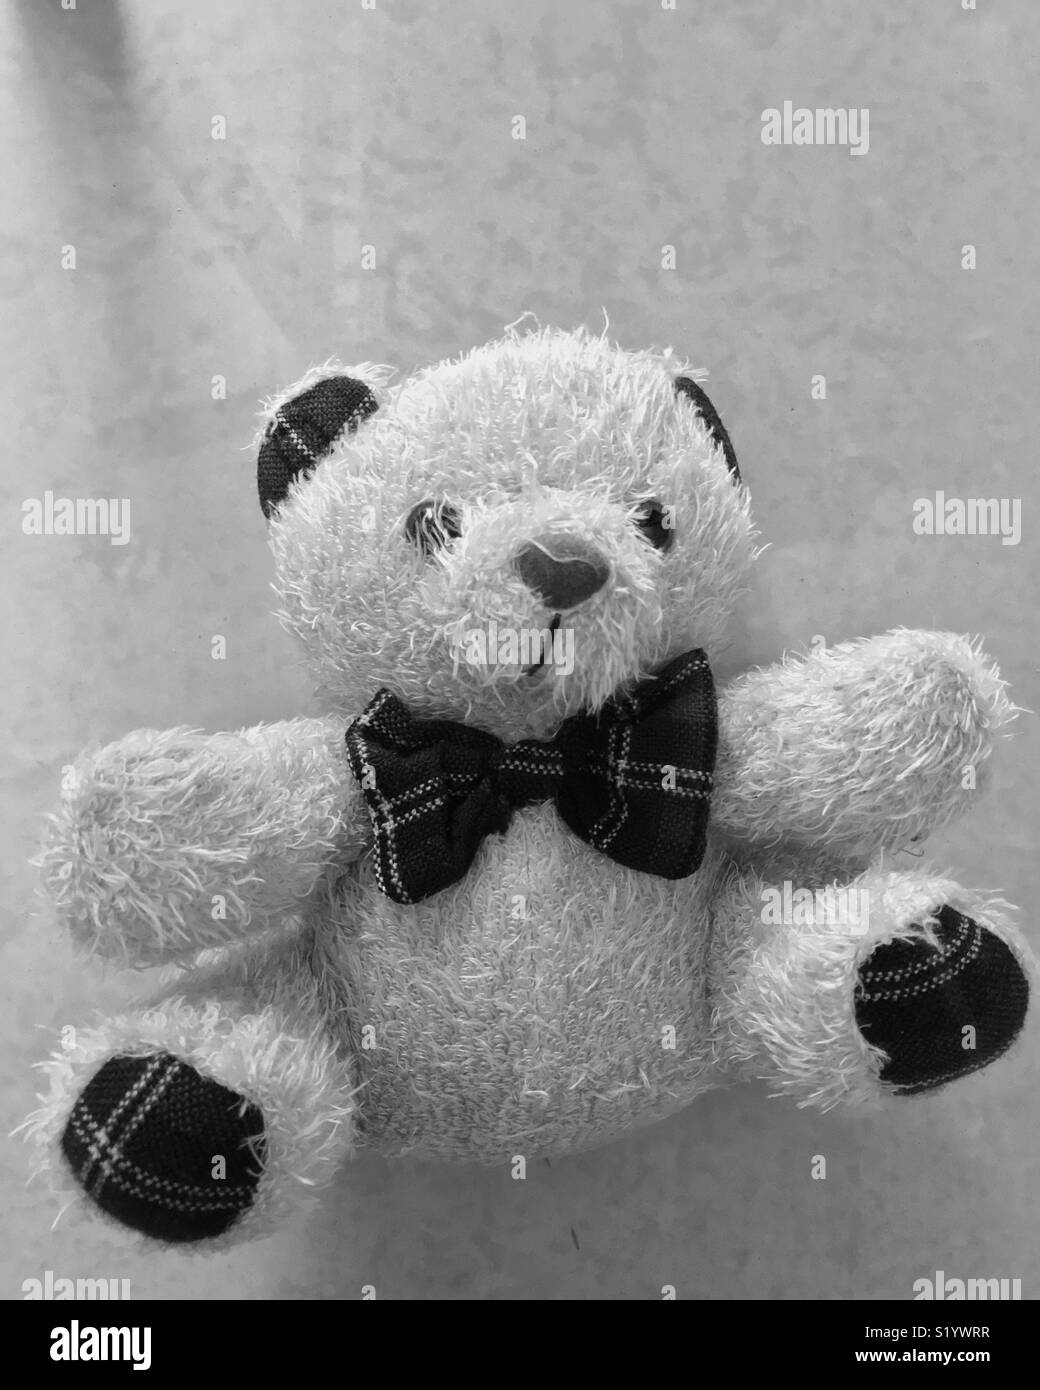 Cute teddy bear Stock Photo